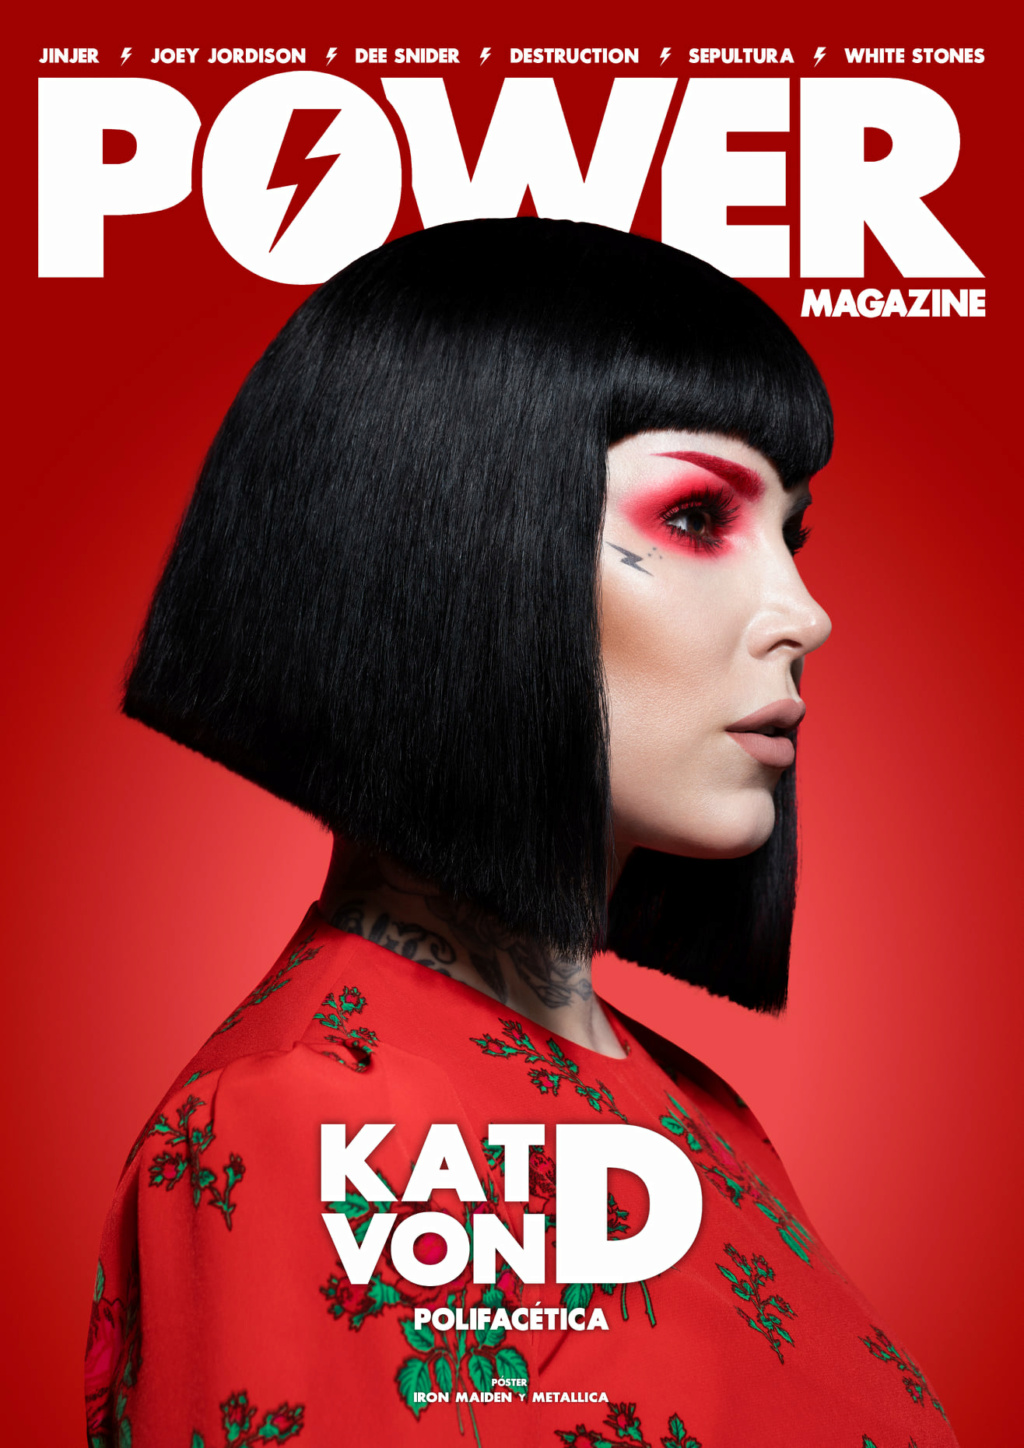 Power Magazine: nueva revista española en físico de rock y metal 22090510